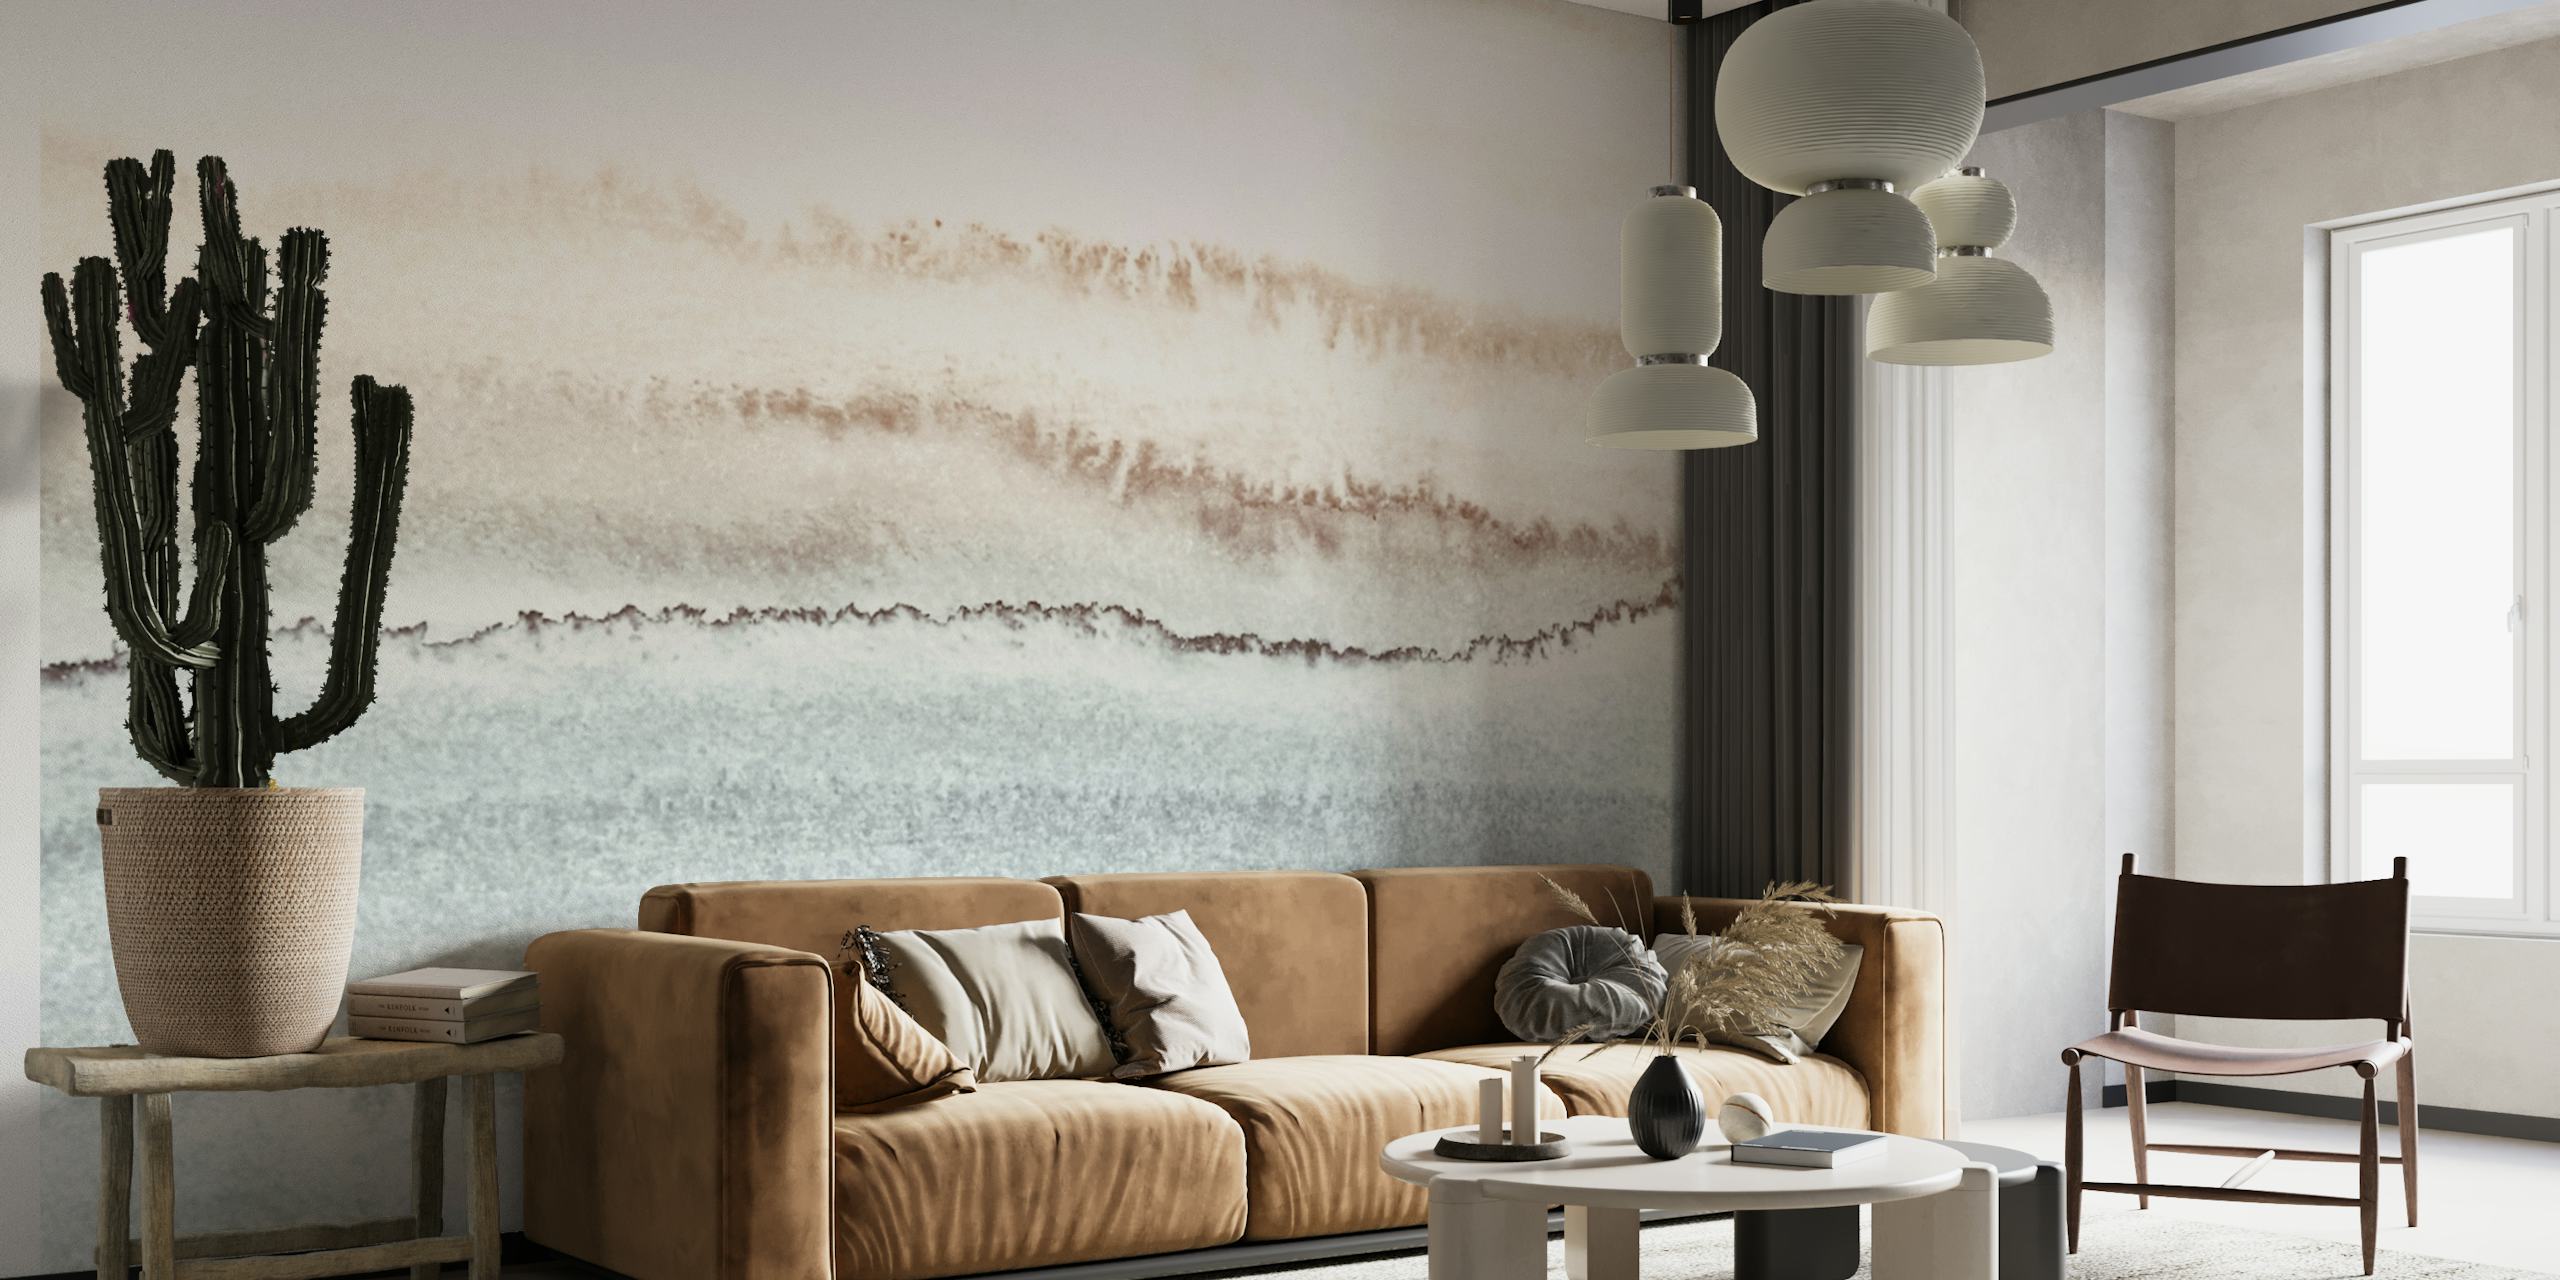 Mural de parede abstrato inspirado no oceano com tons terrosos misturados em um gradiente.